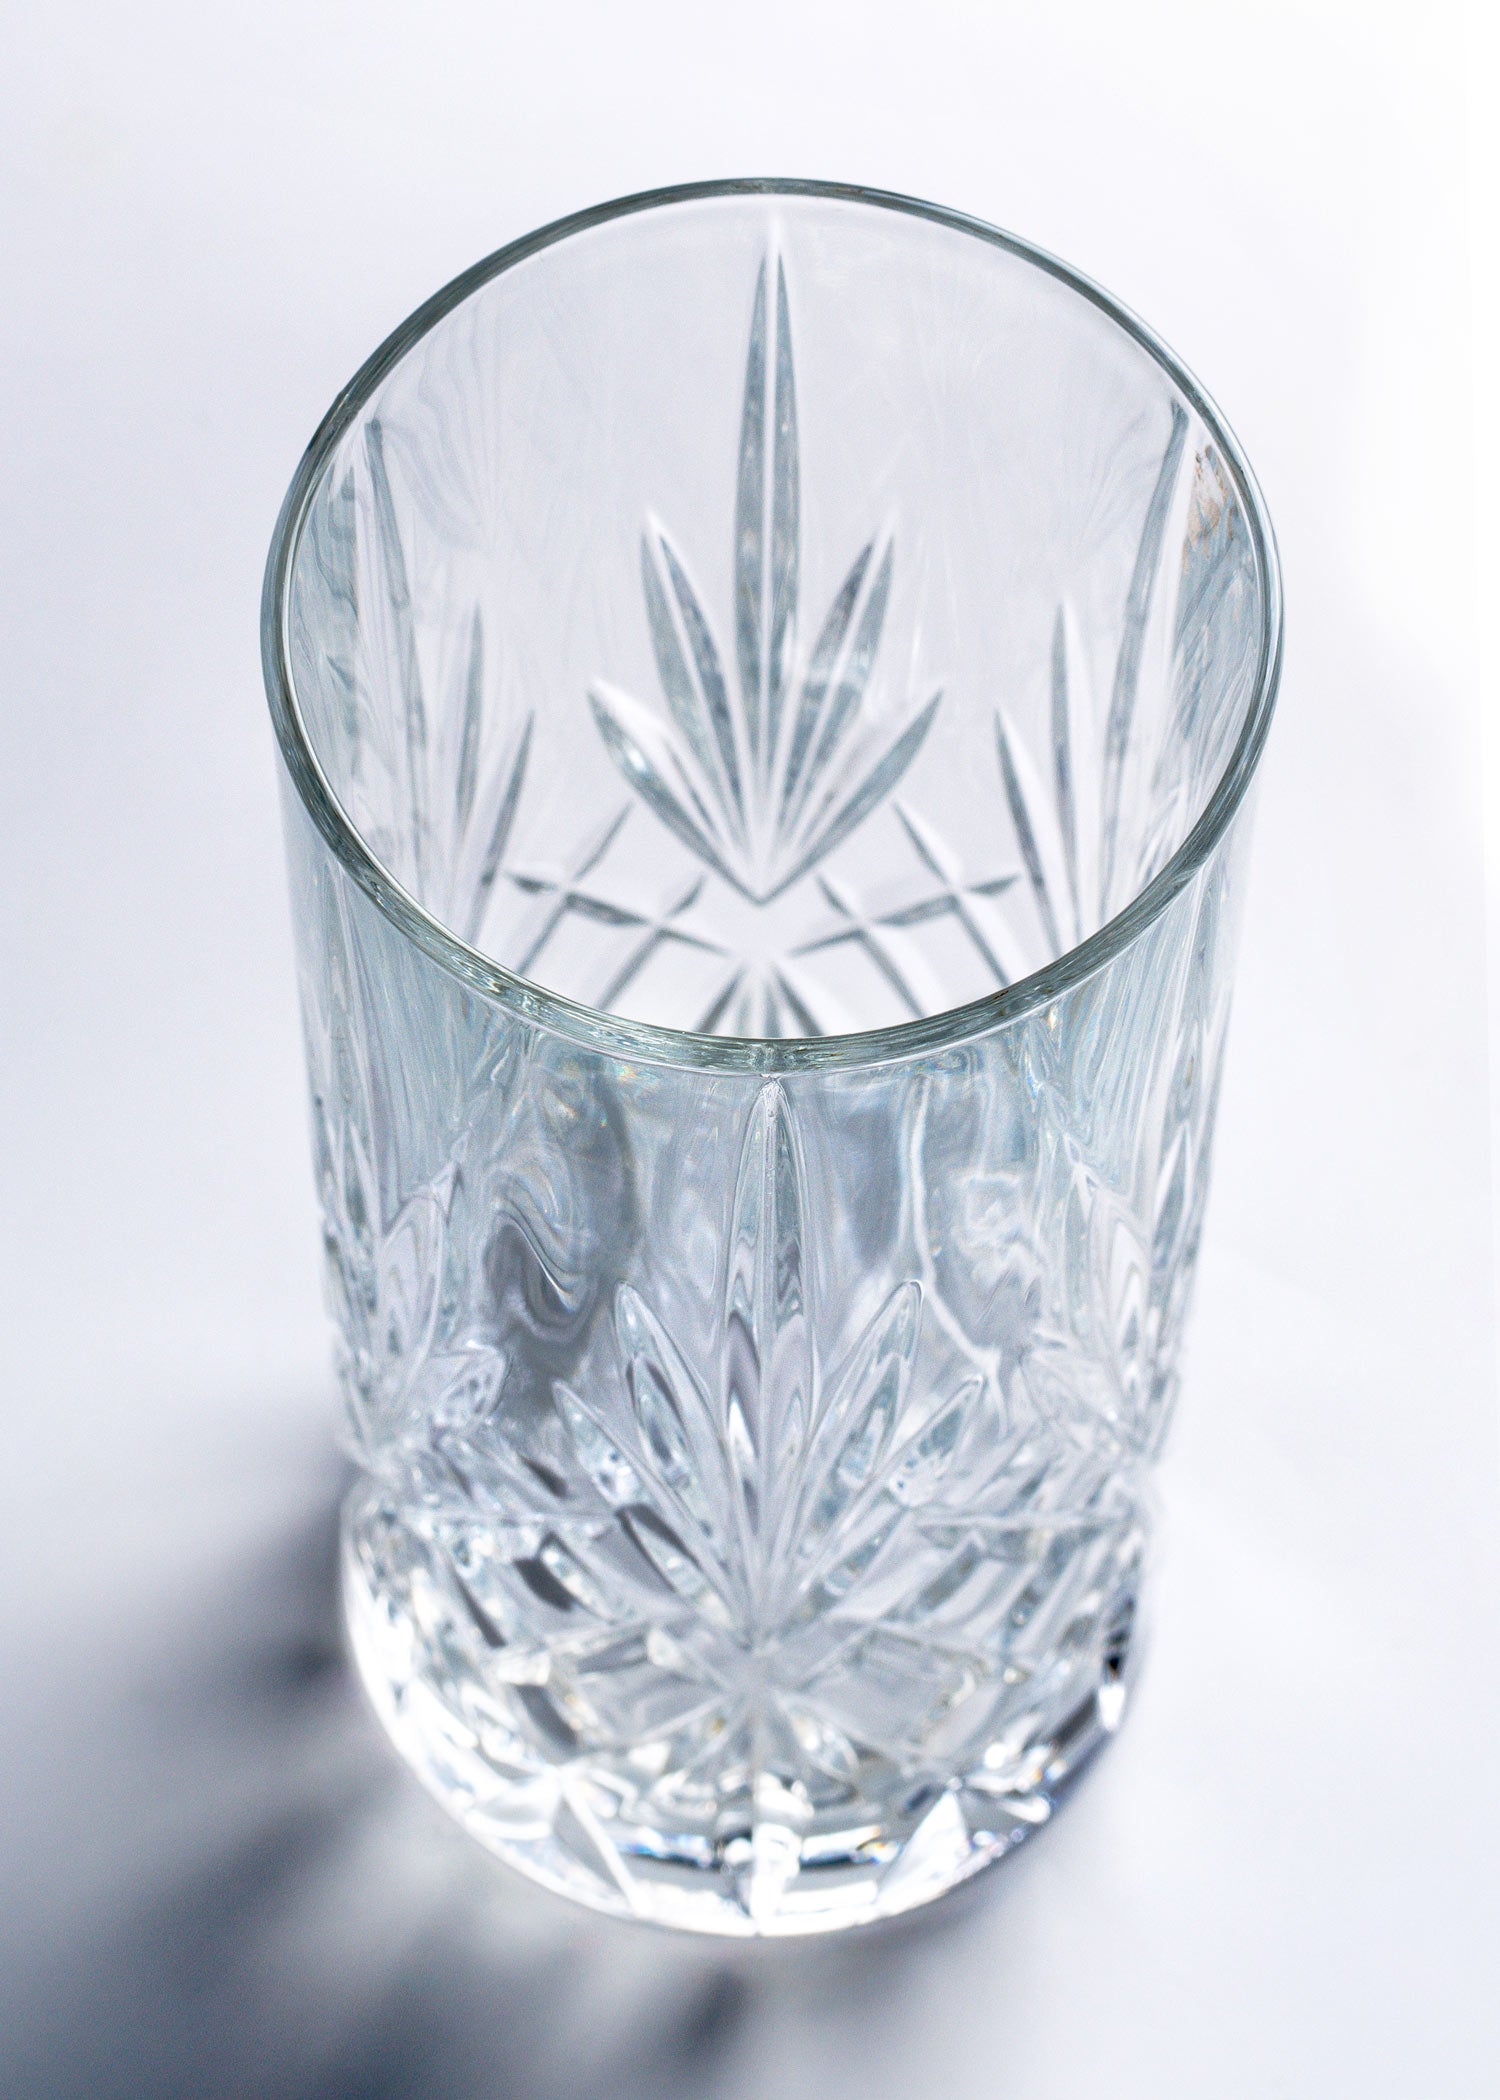 precio vaso vidrio mahahome